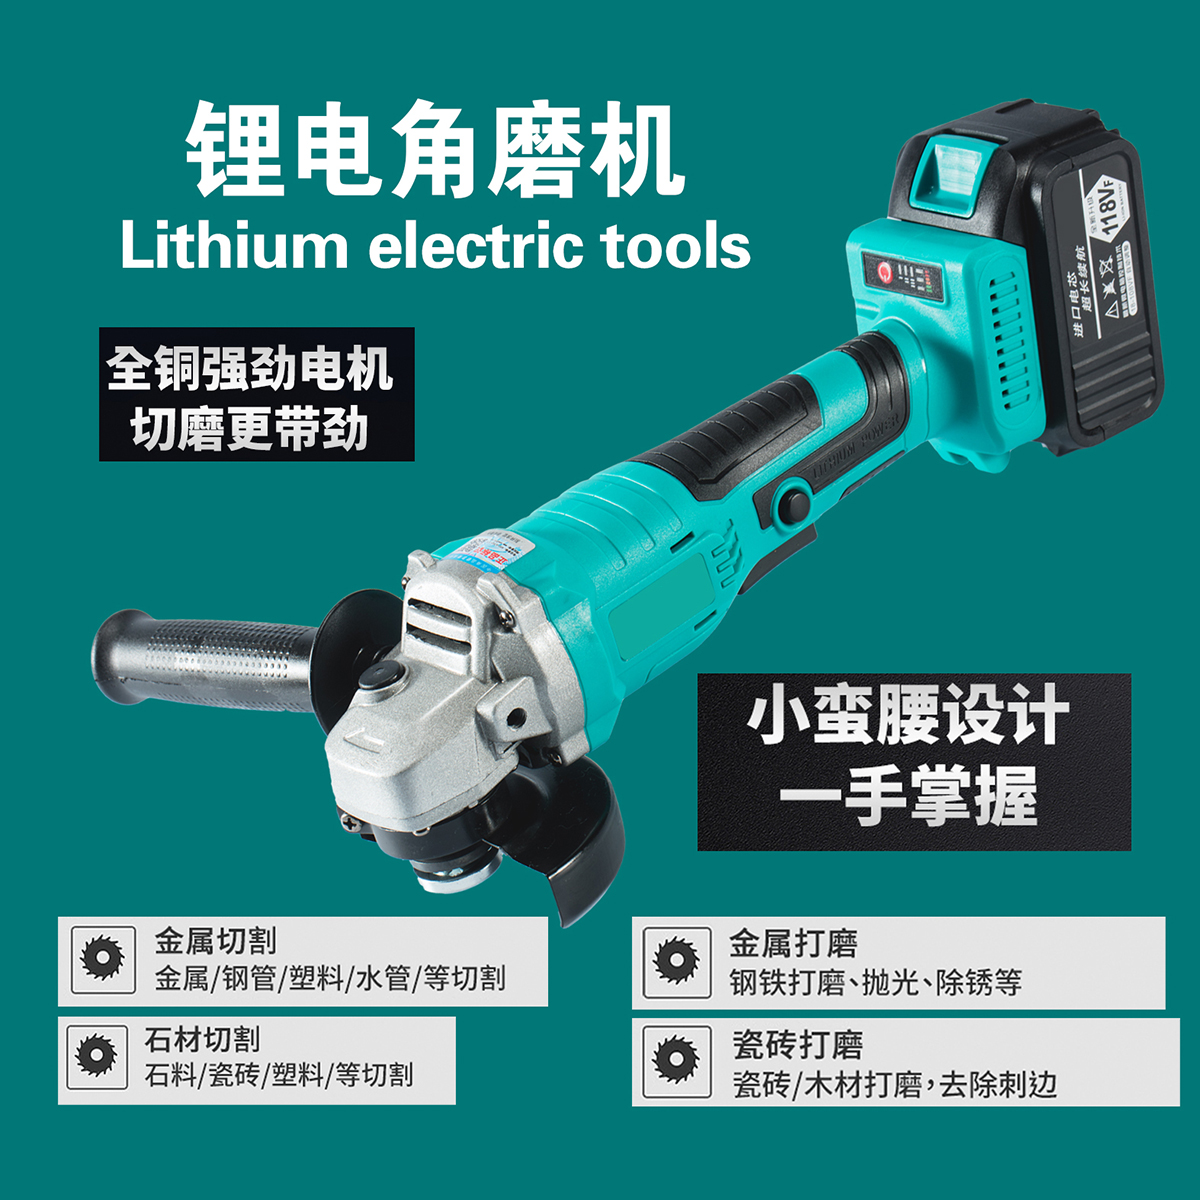 Lithium electric tools